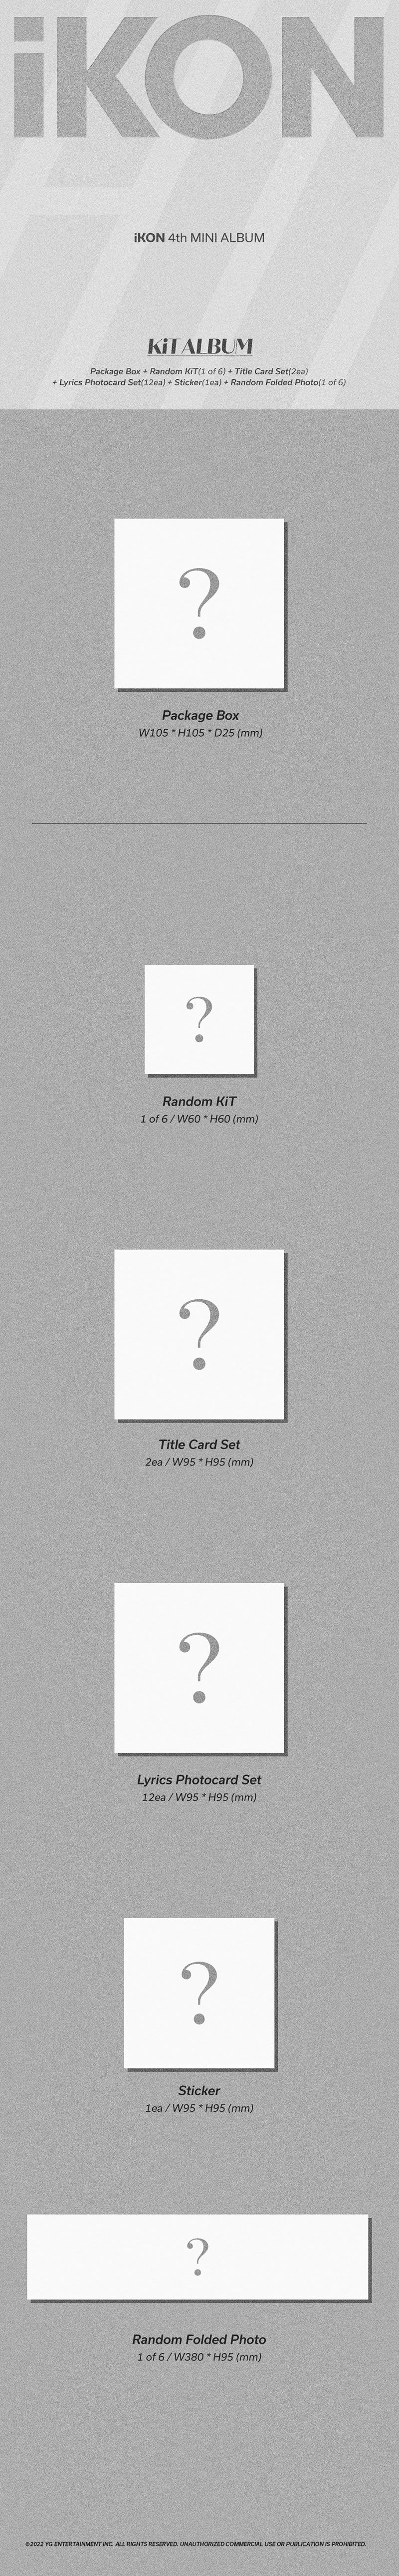 iKON - FLASHBACK (4th Mini Album) KiT